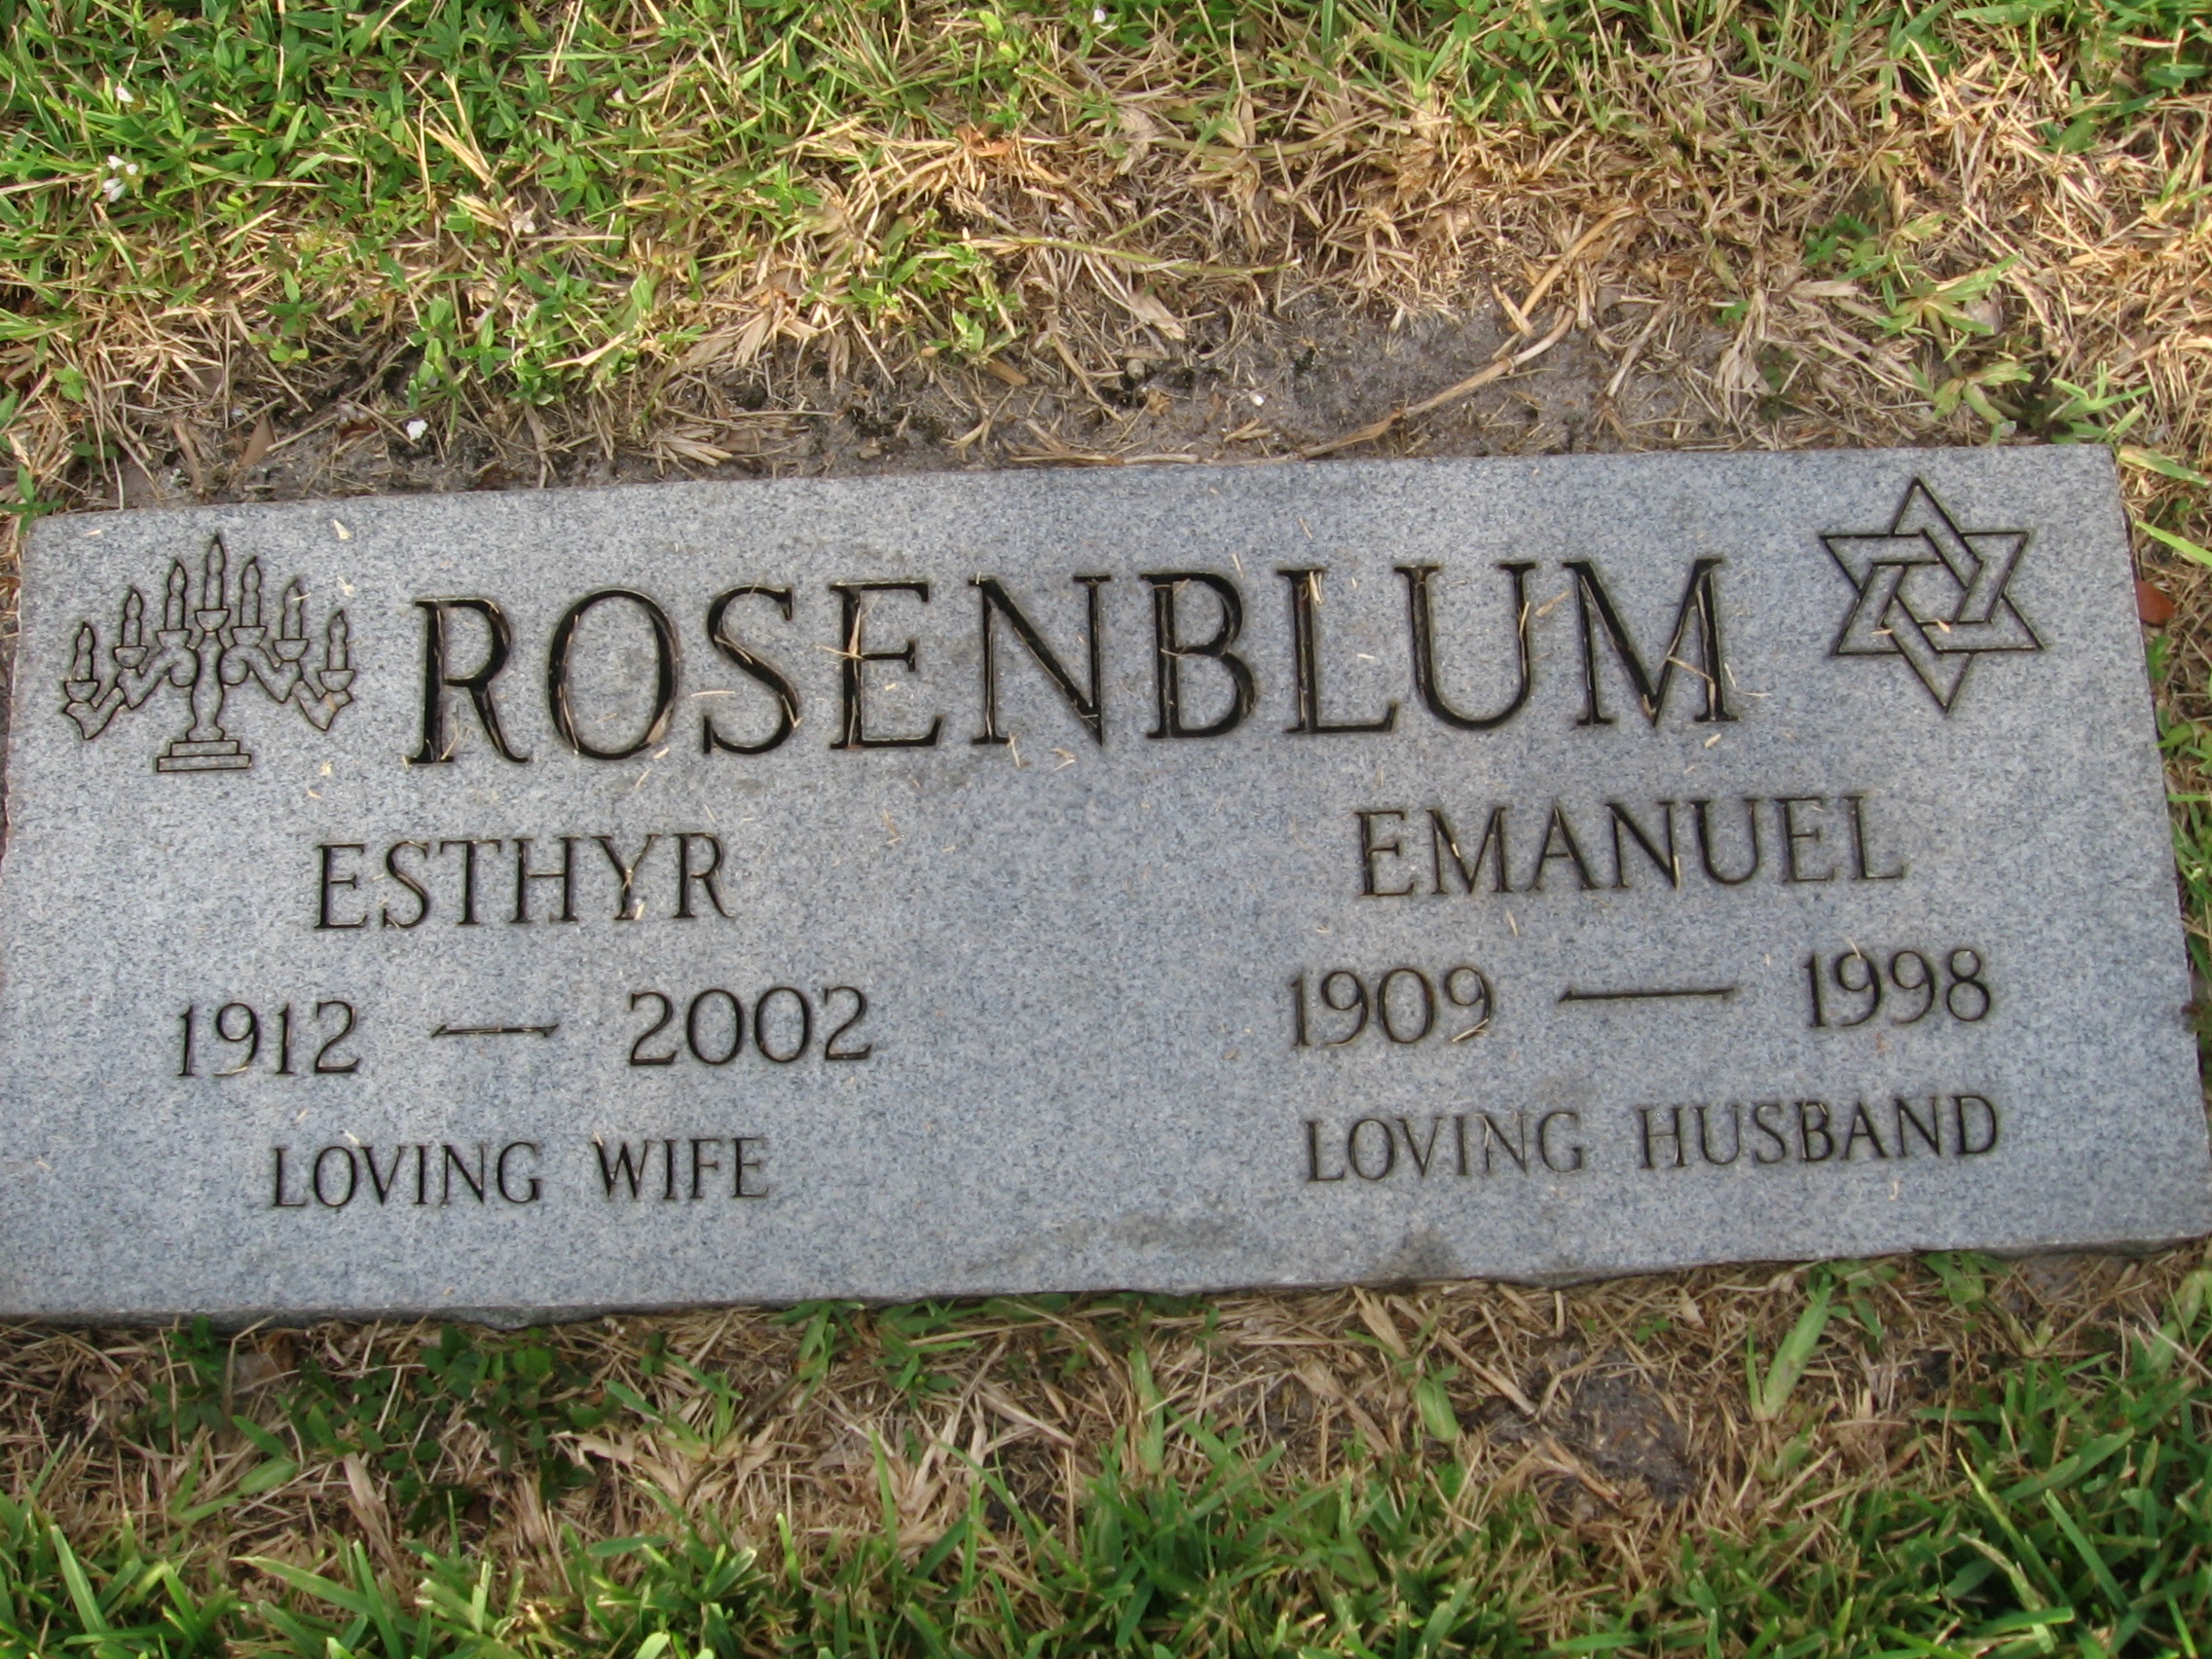 Esthyr Rosenblum